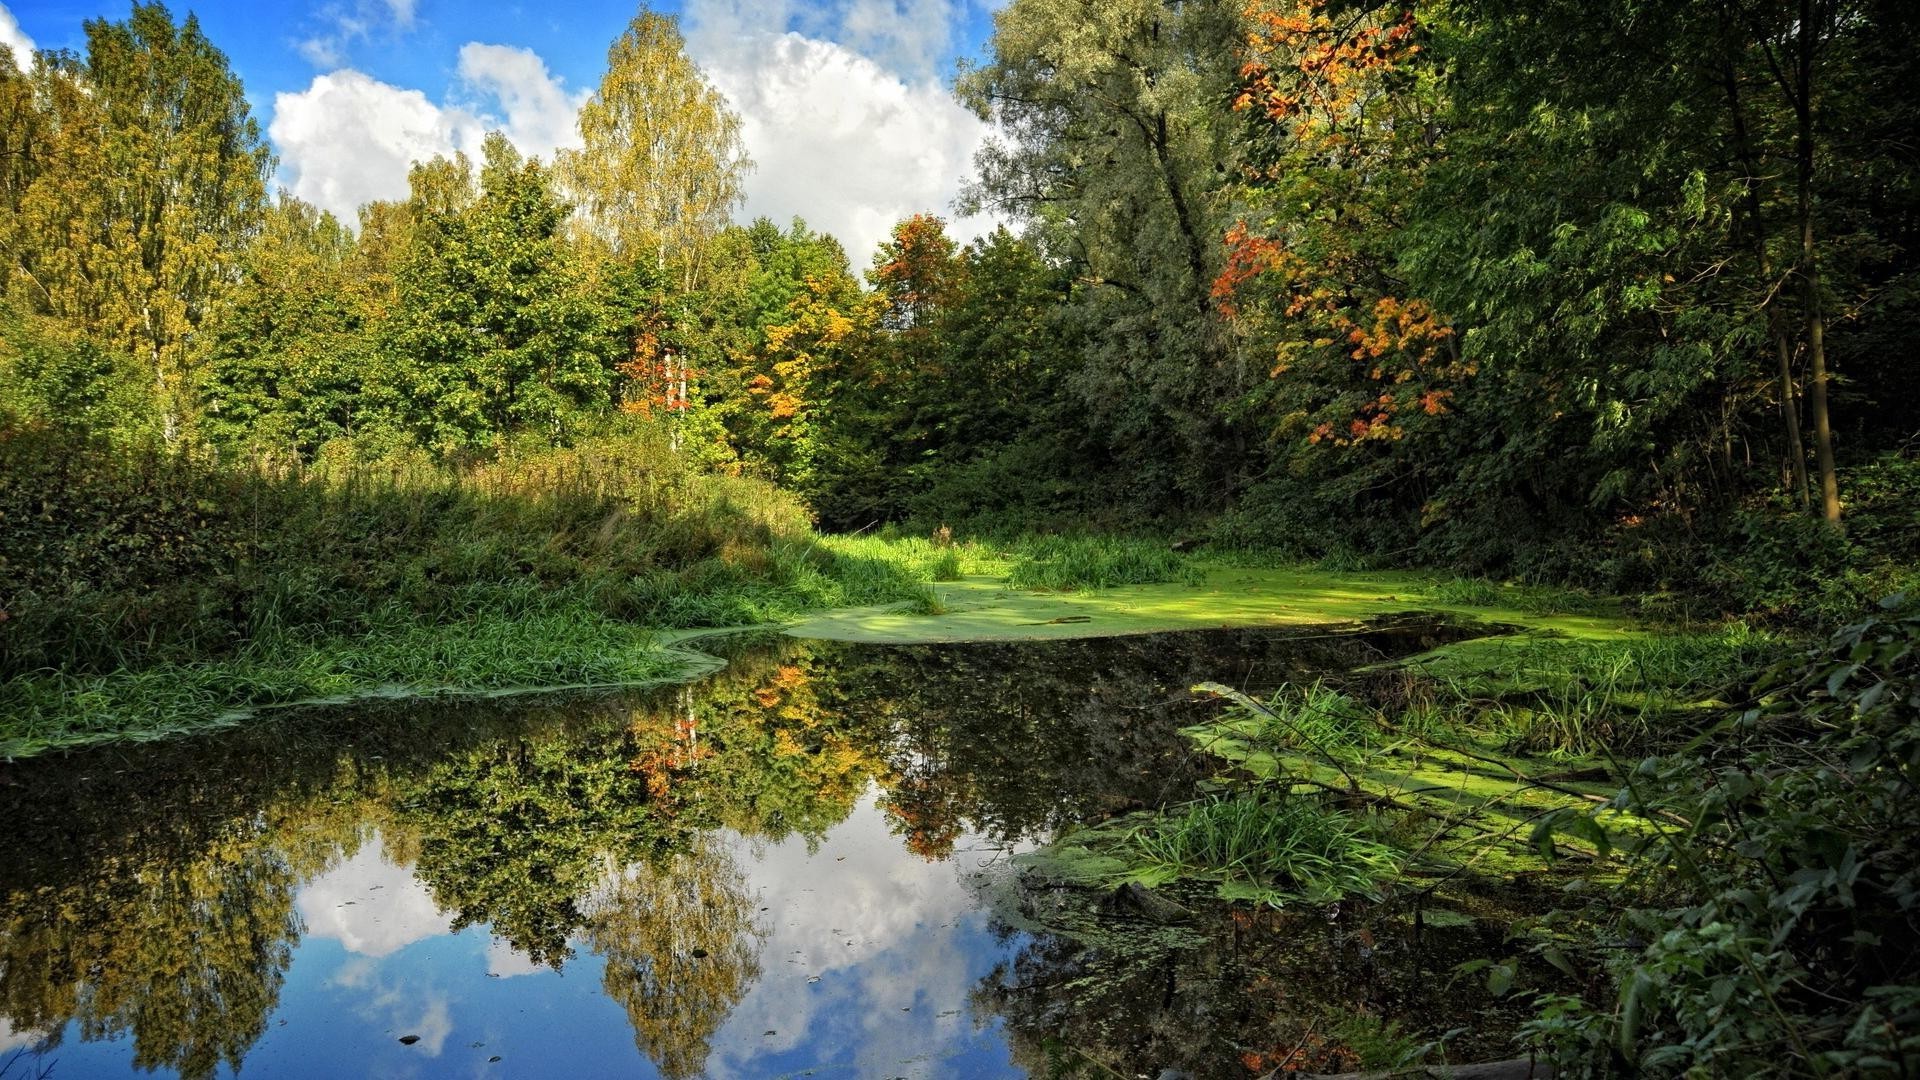 лес природа пейзаж дерево древесины лист воды на открытом воздухе парк живописный осень река среды сезон пейзажи лето озеро путешествия зрелище трава